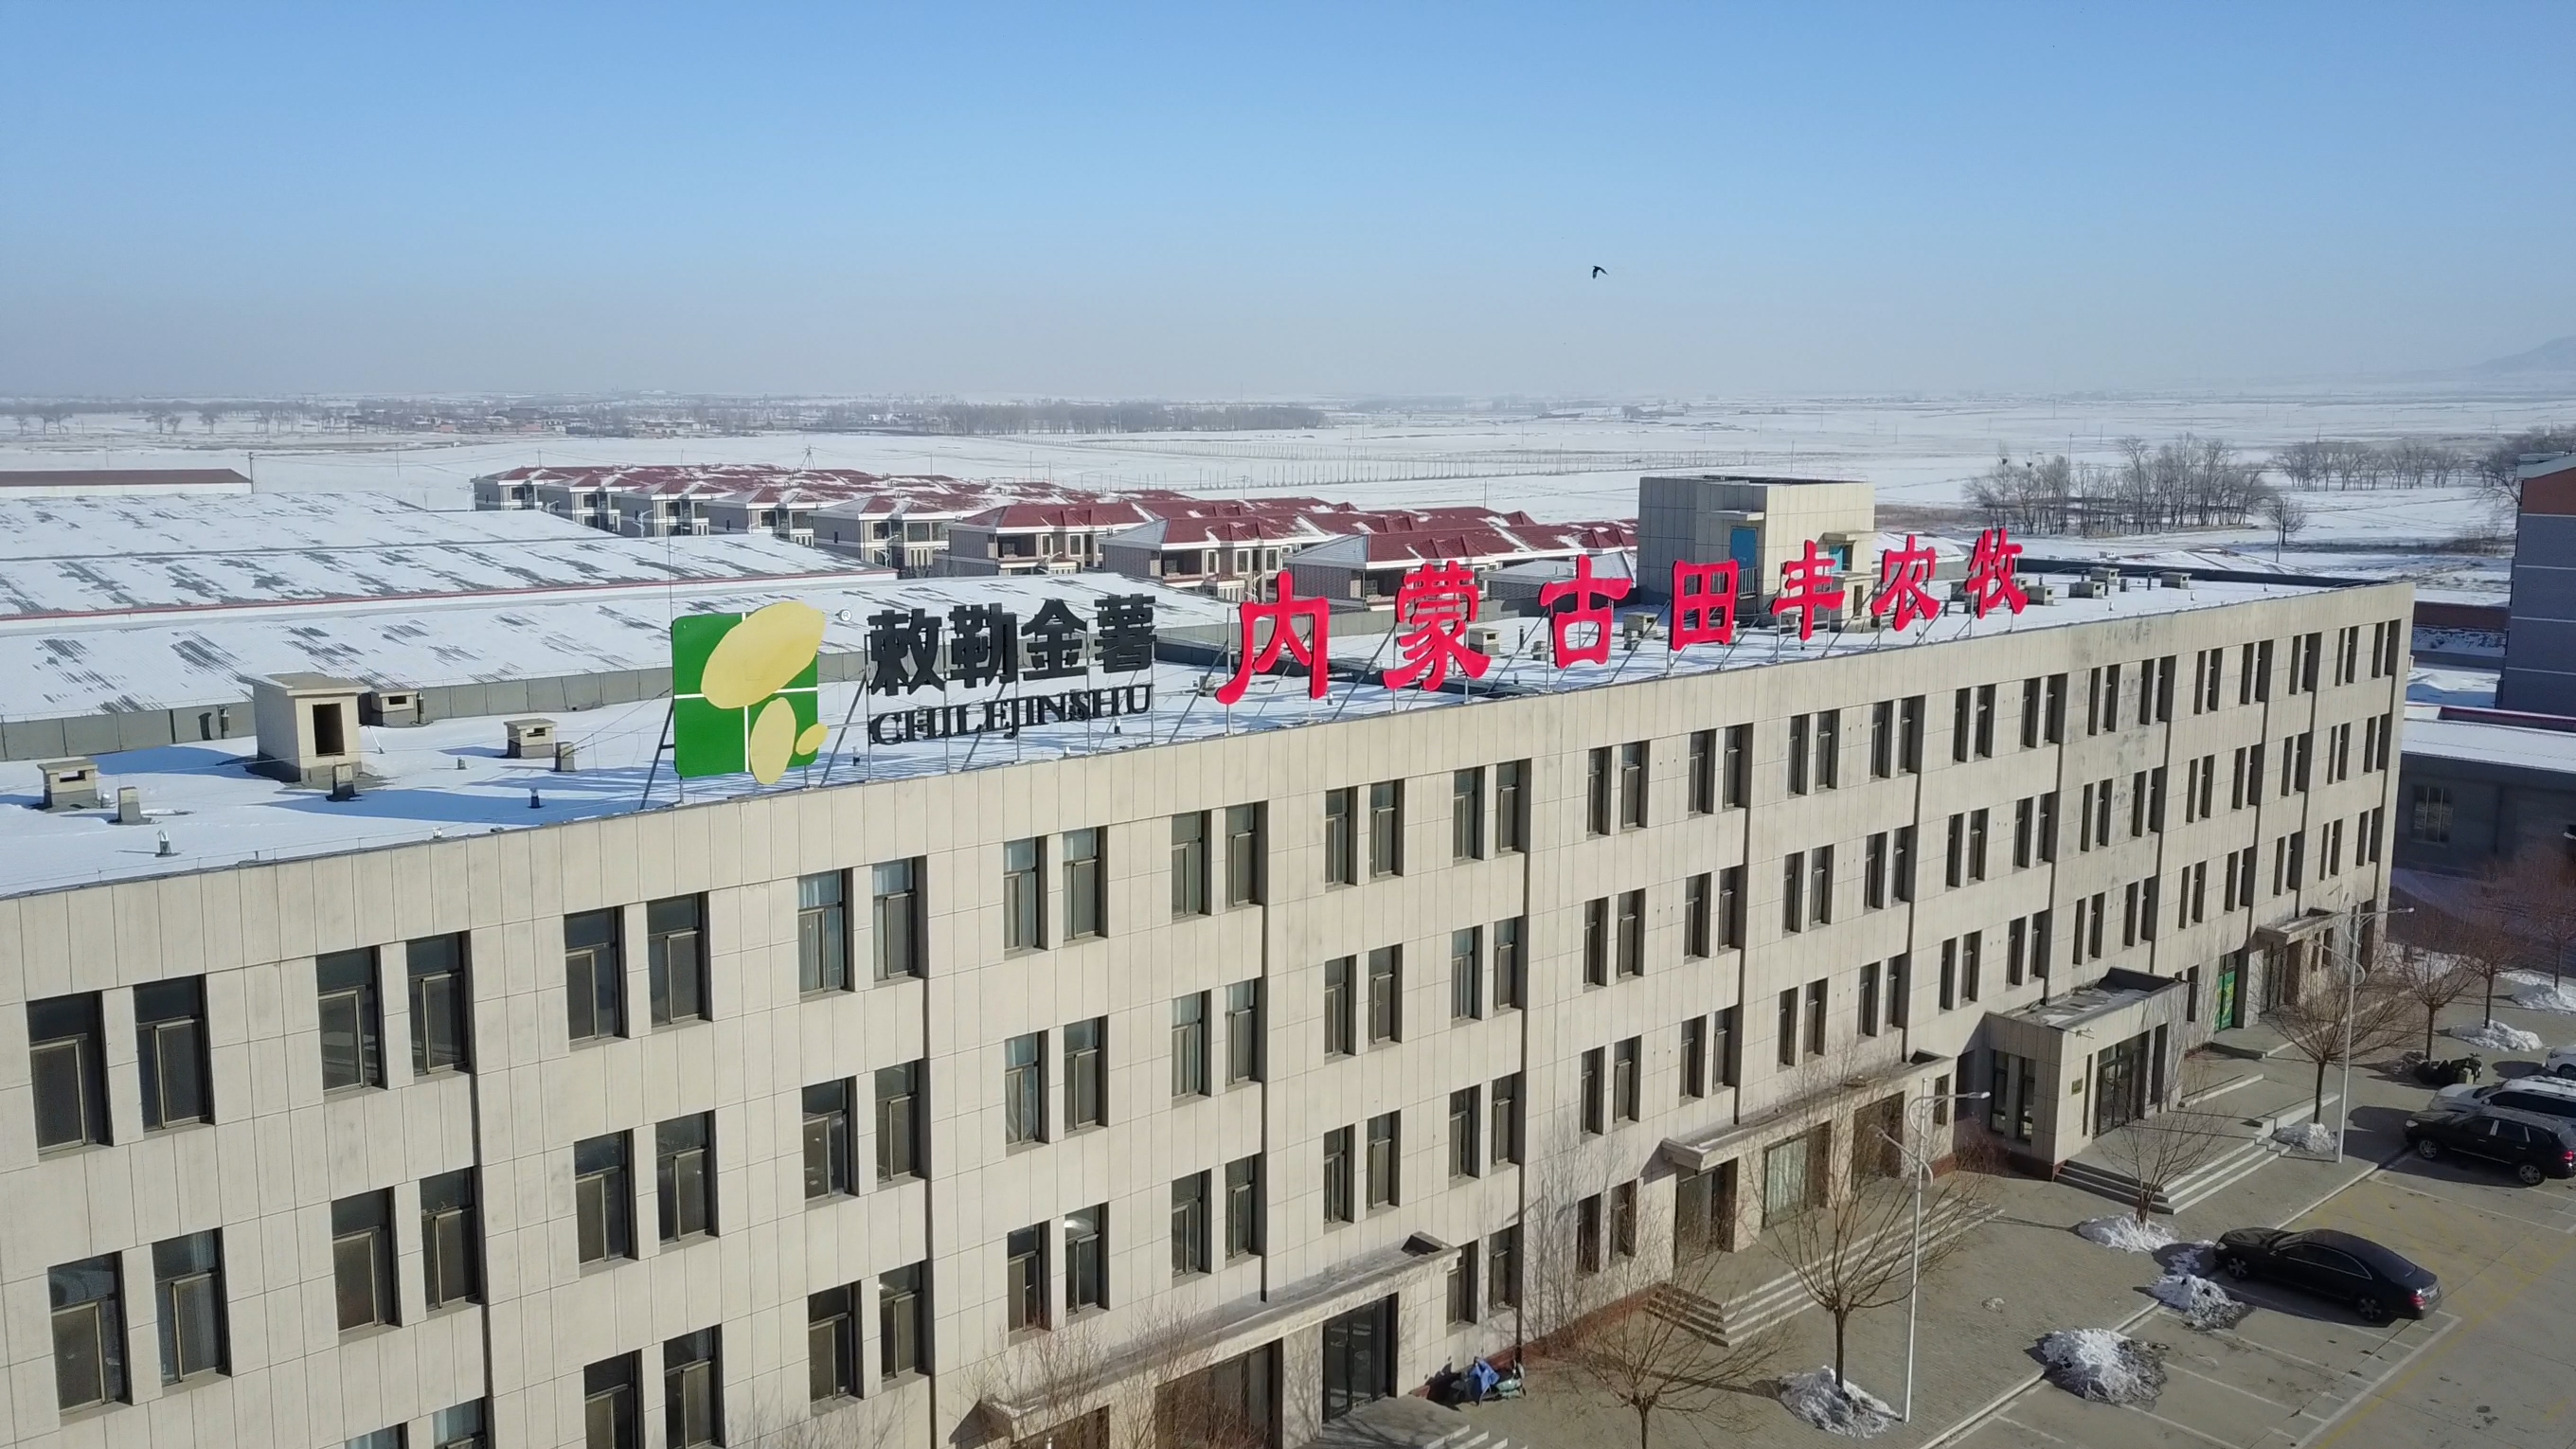 内蒙古田丰农牧有限责任公司，隶属于内蒙古金薯农业集团，是内蒙古自治区农牧业产业化重点龙头企业，已投资5.5亿元建成的综合性产业园区